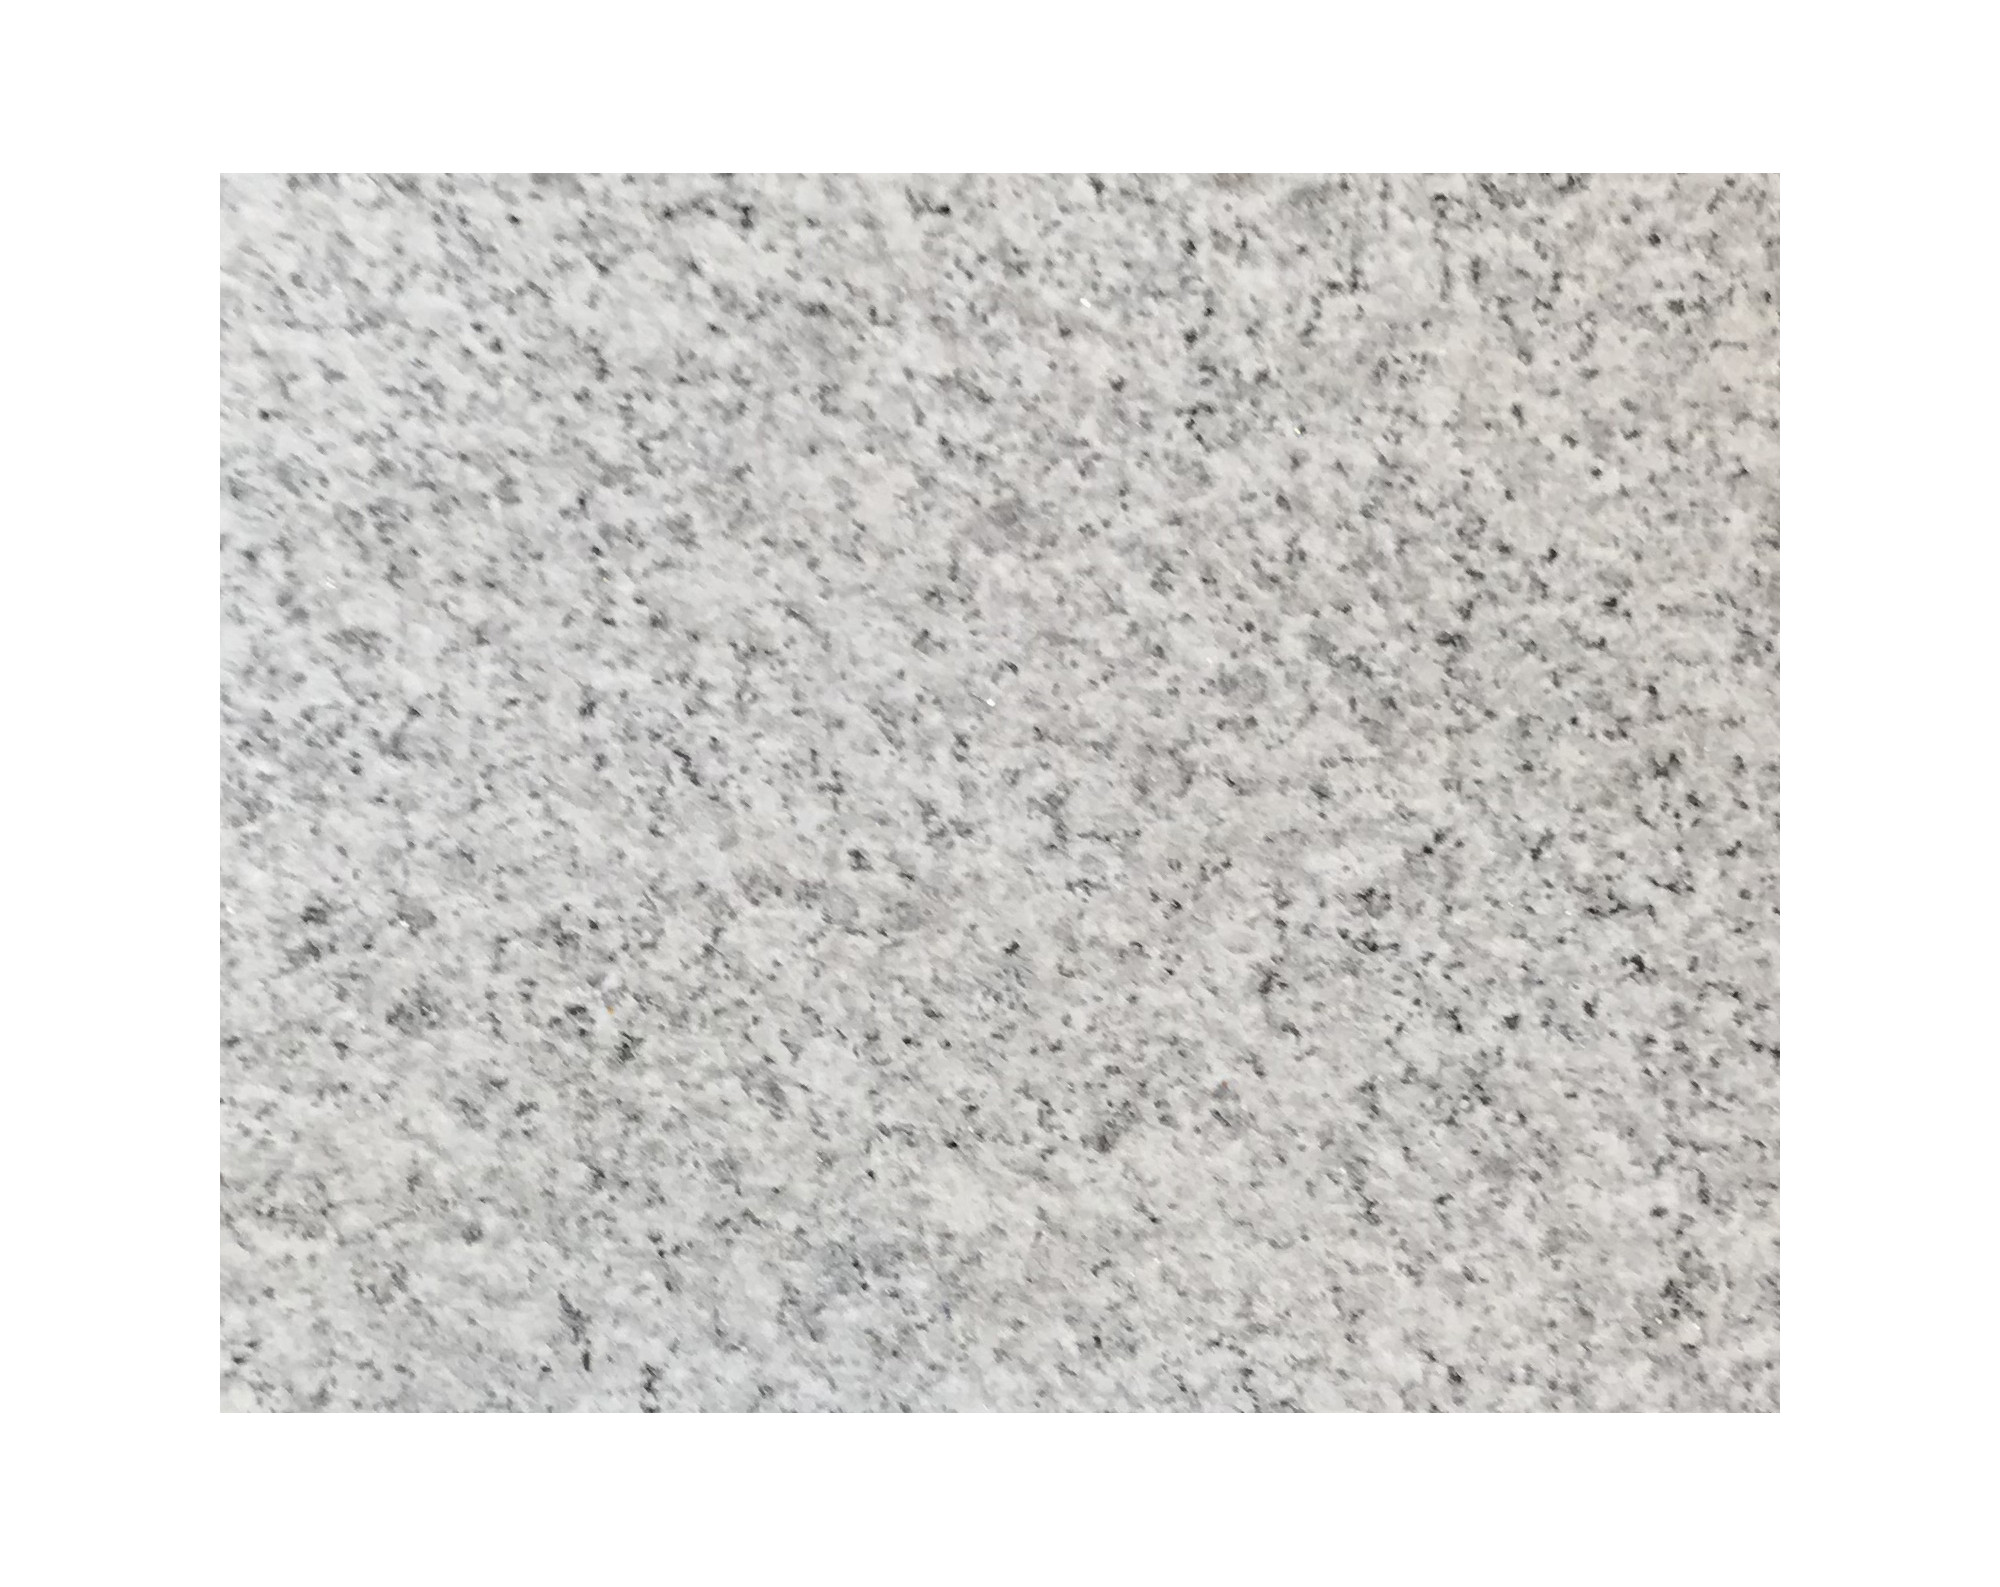 Harmo roc napoliset, natura-serie, ovaal d: 4,20mx9,50m, lichtgrijs, graniet